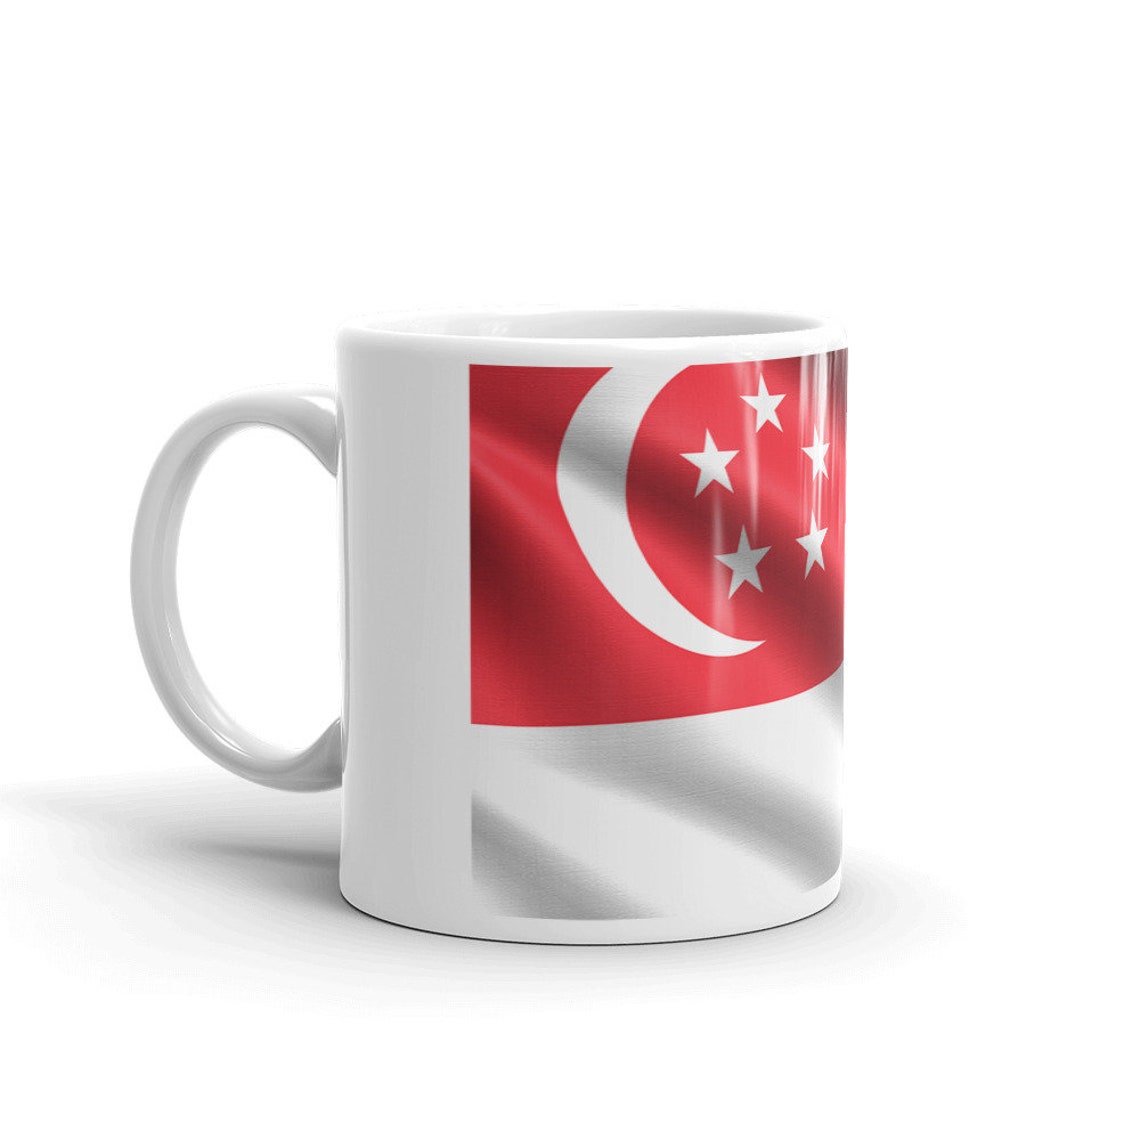 Singapore Flag coffee mug cup gift for ambassadors and